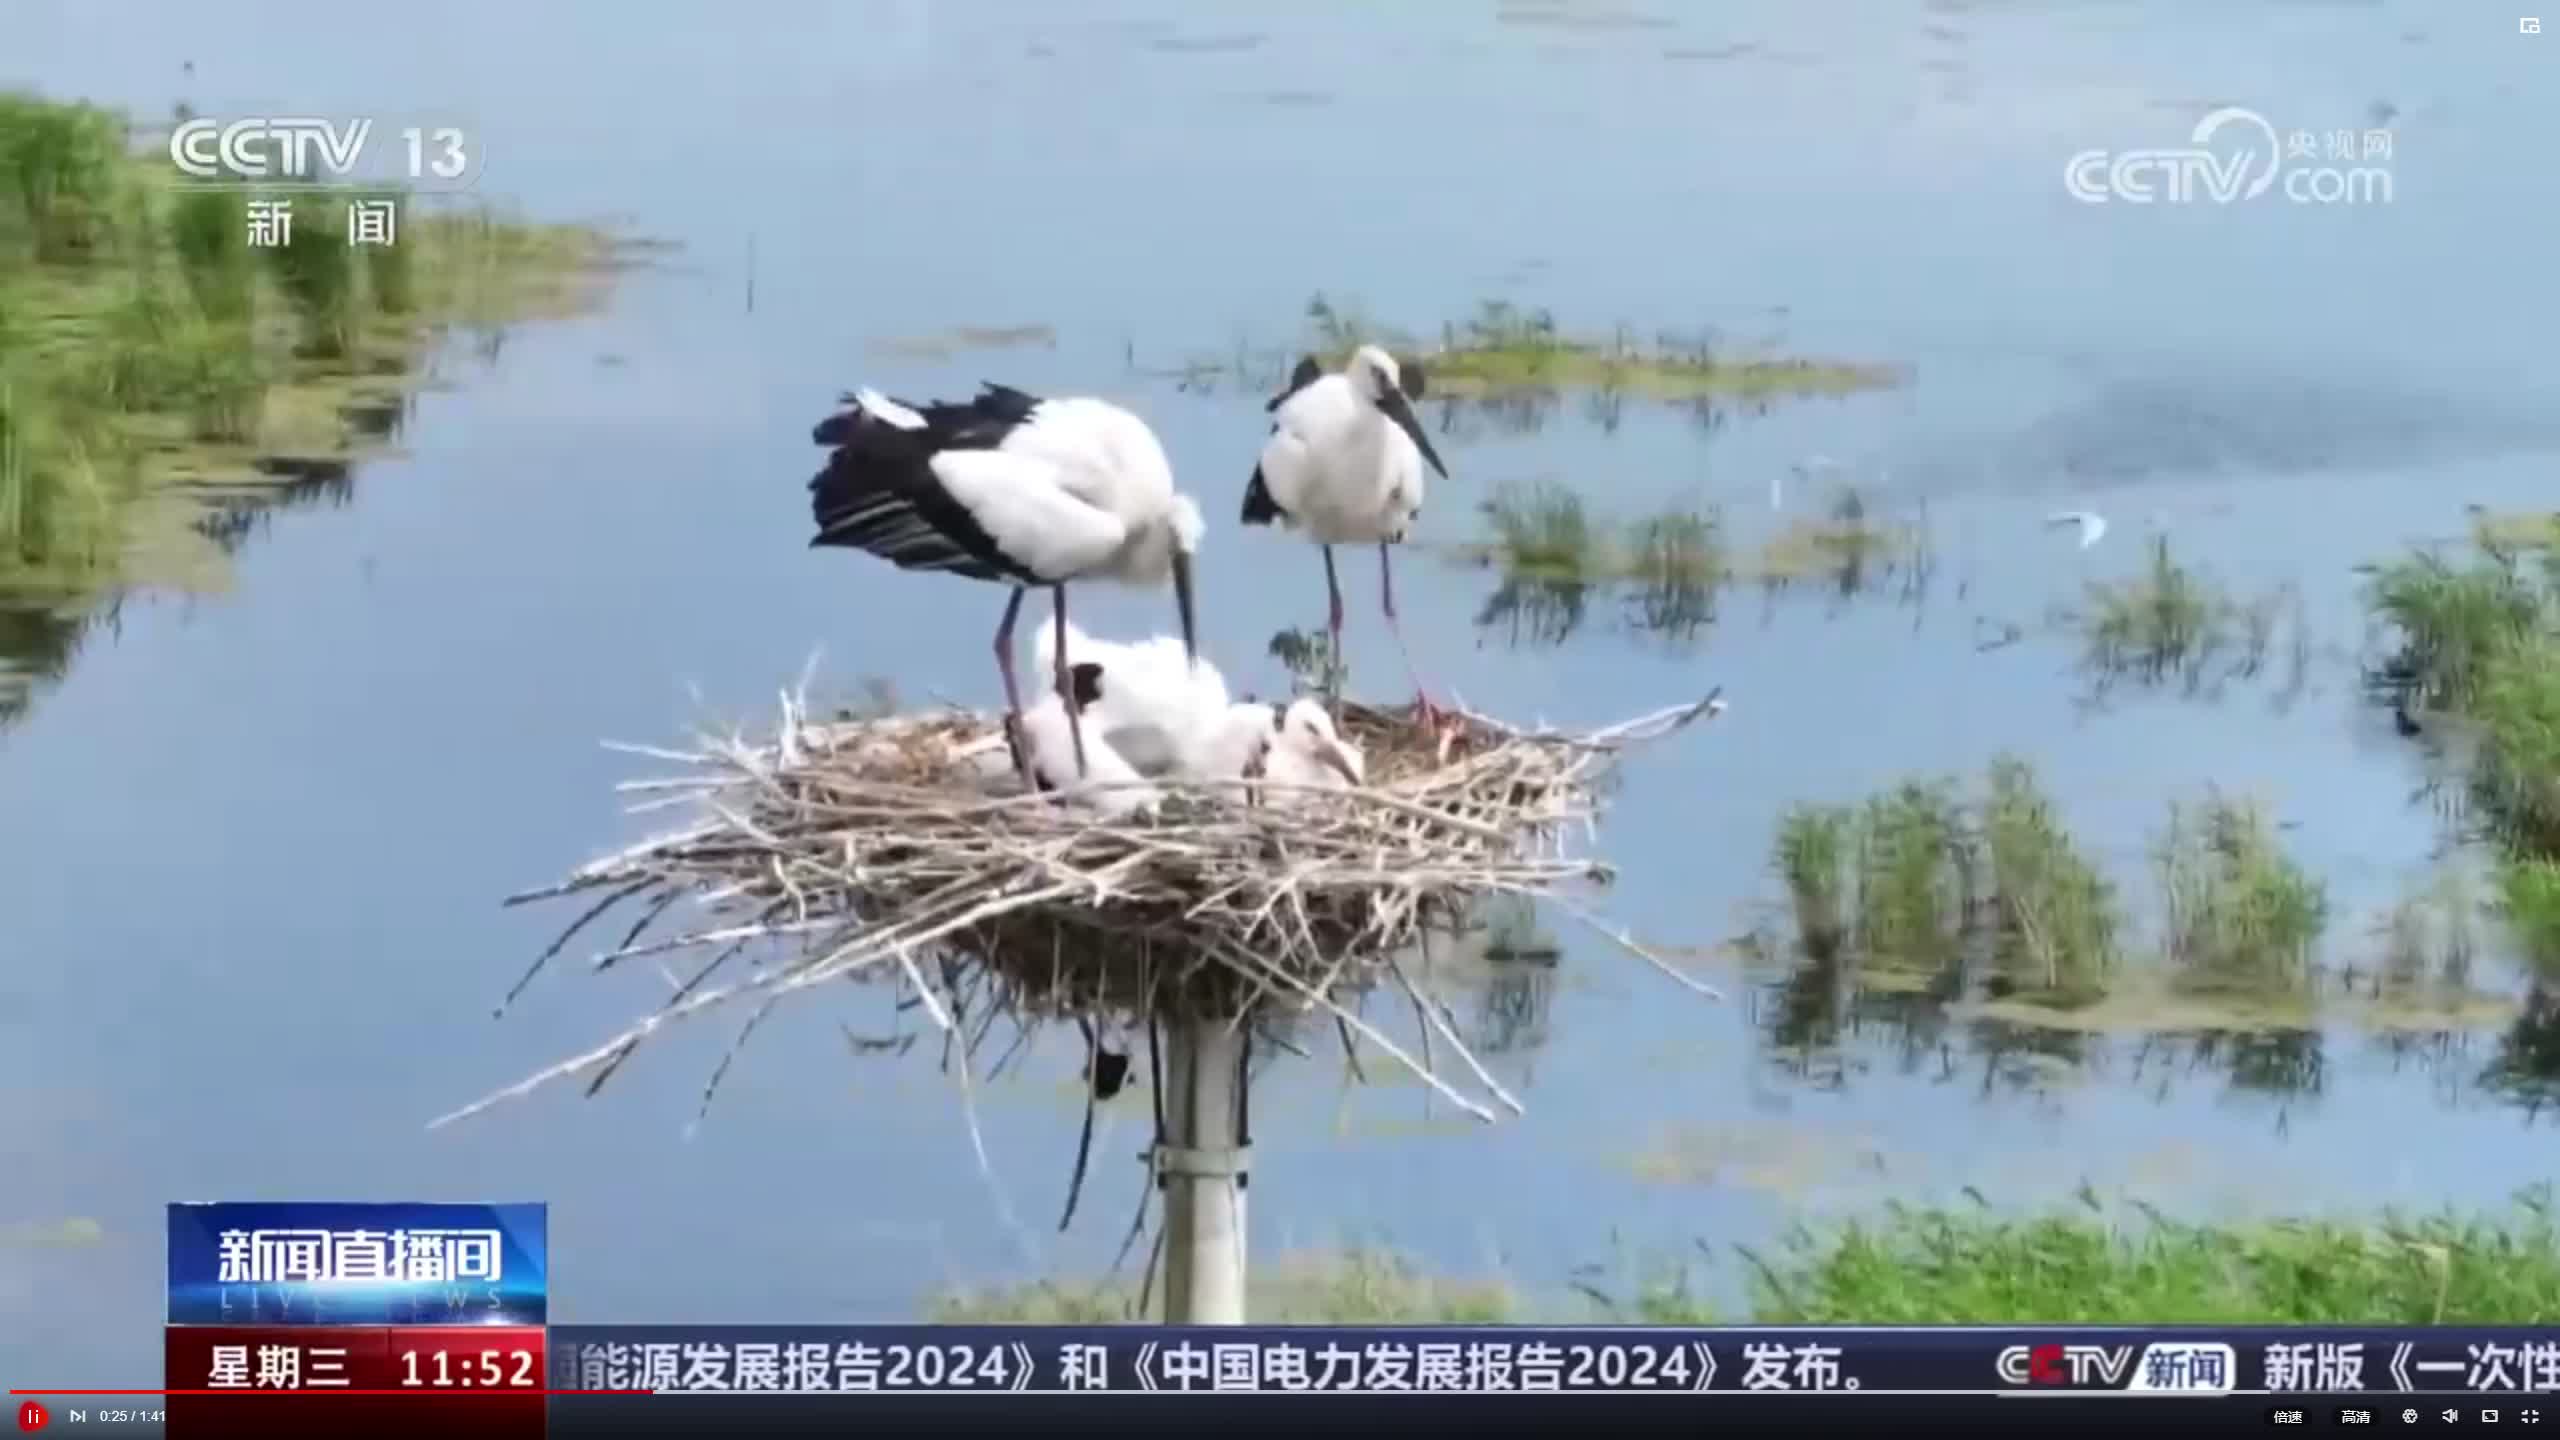 【cctv13新闻】新闻直播间丨黑龙江 六鹳同巢 千鹤岛成为鸟类乐园